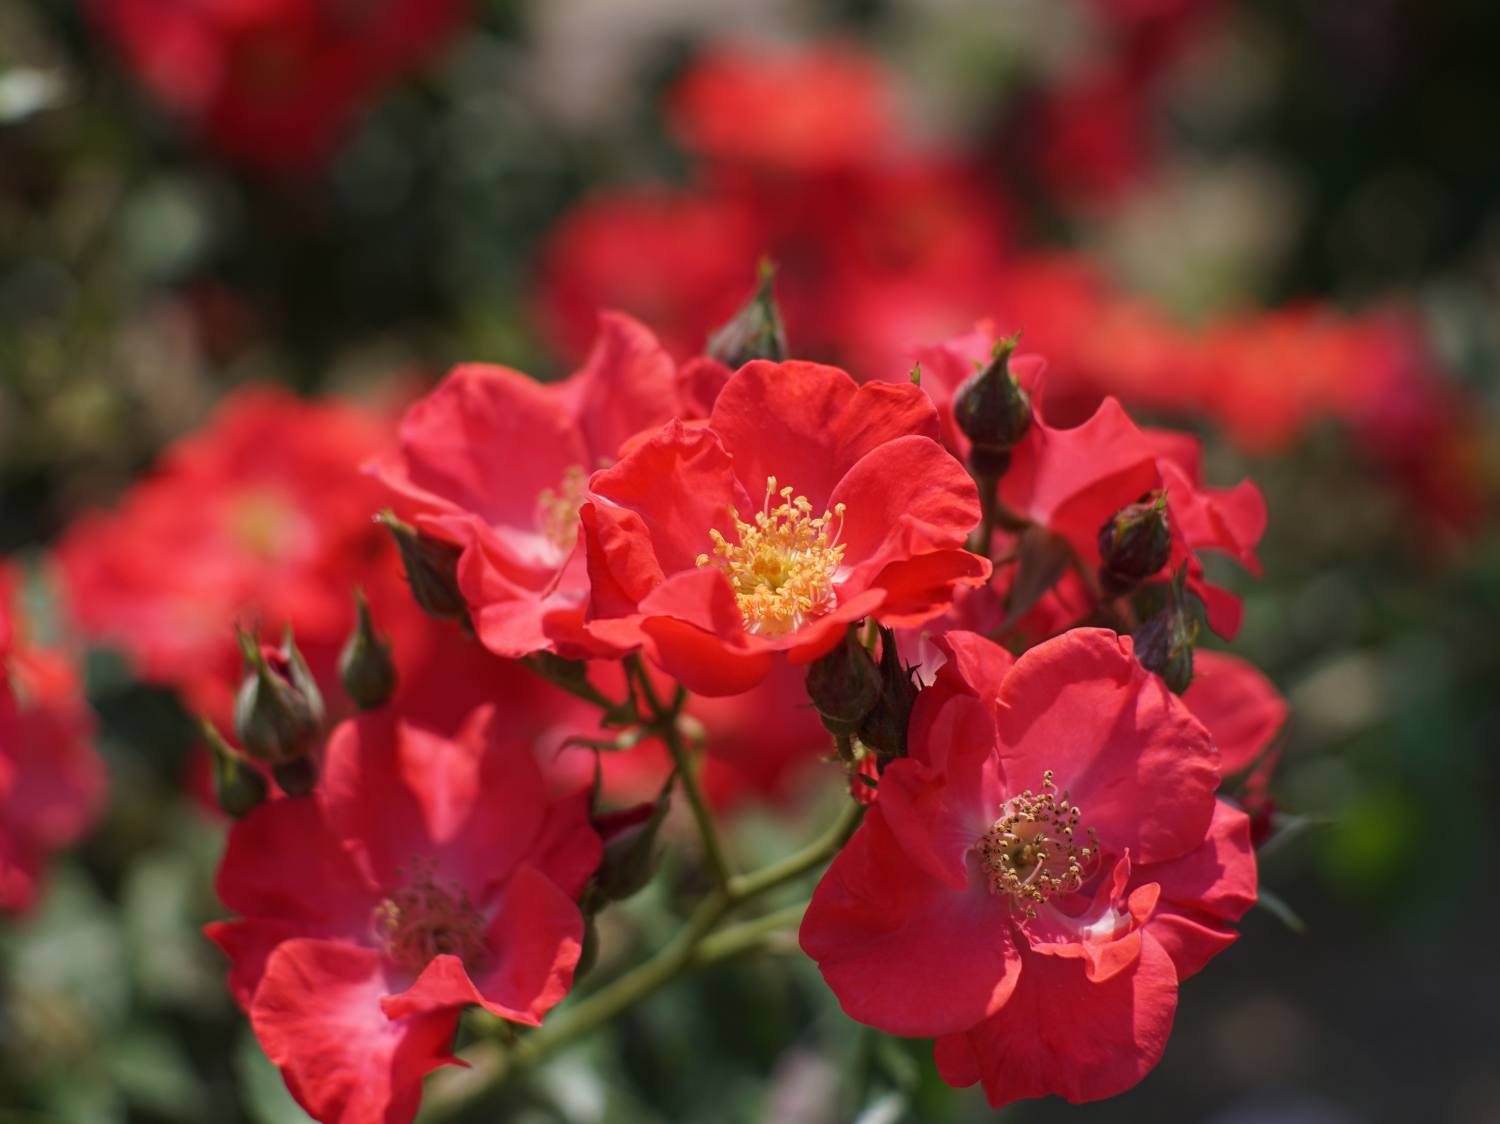 Heirloom rose varieties